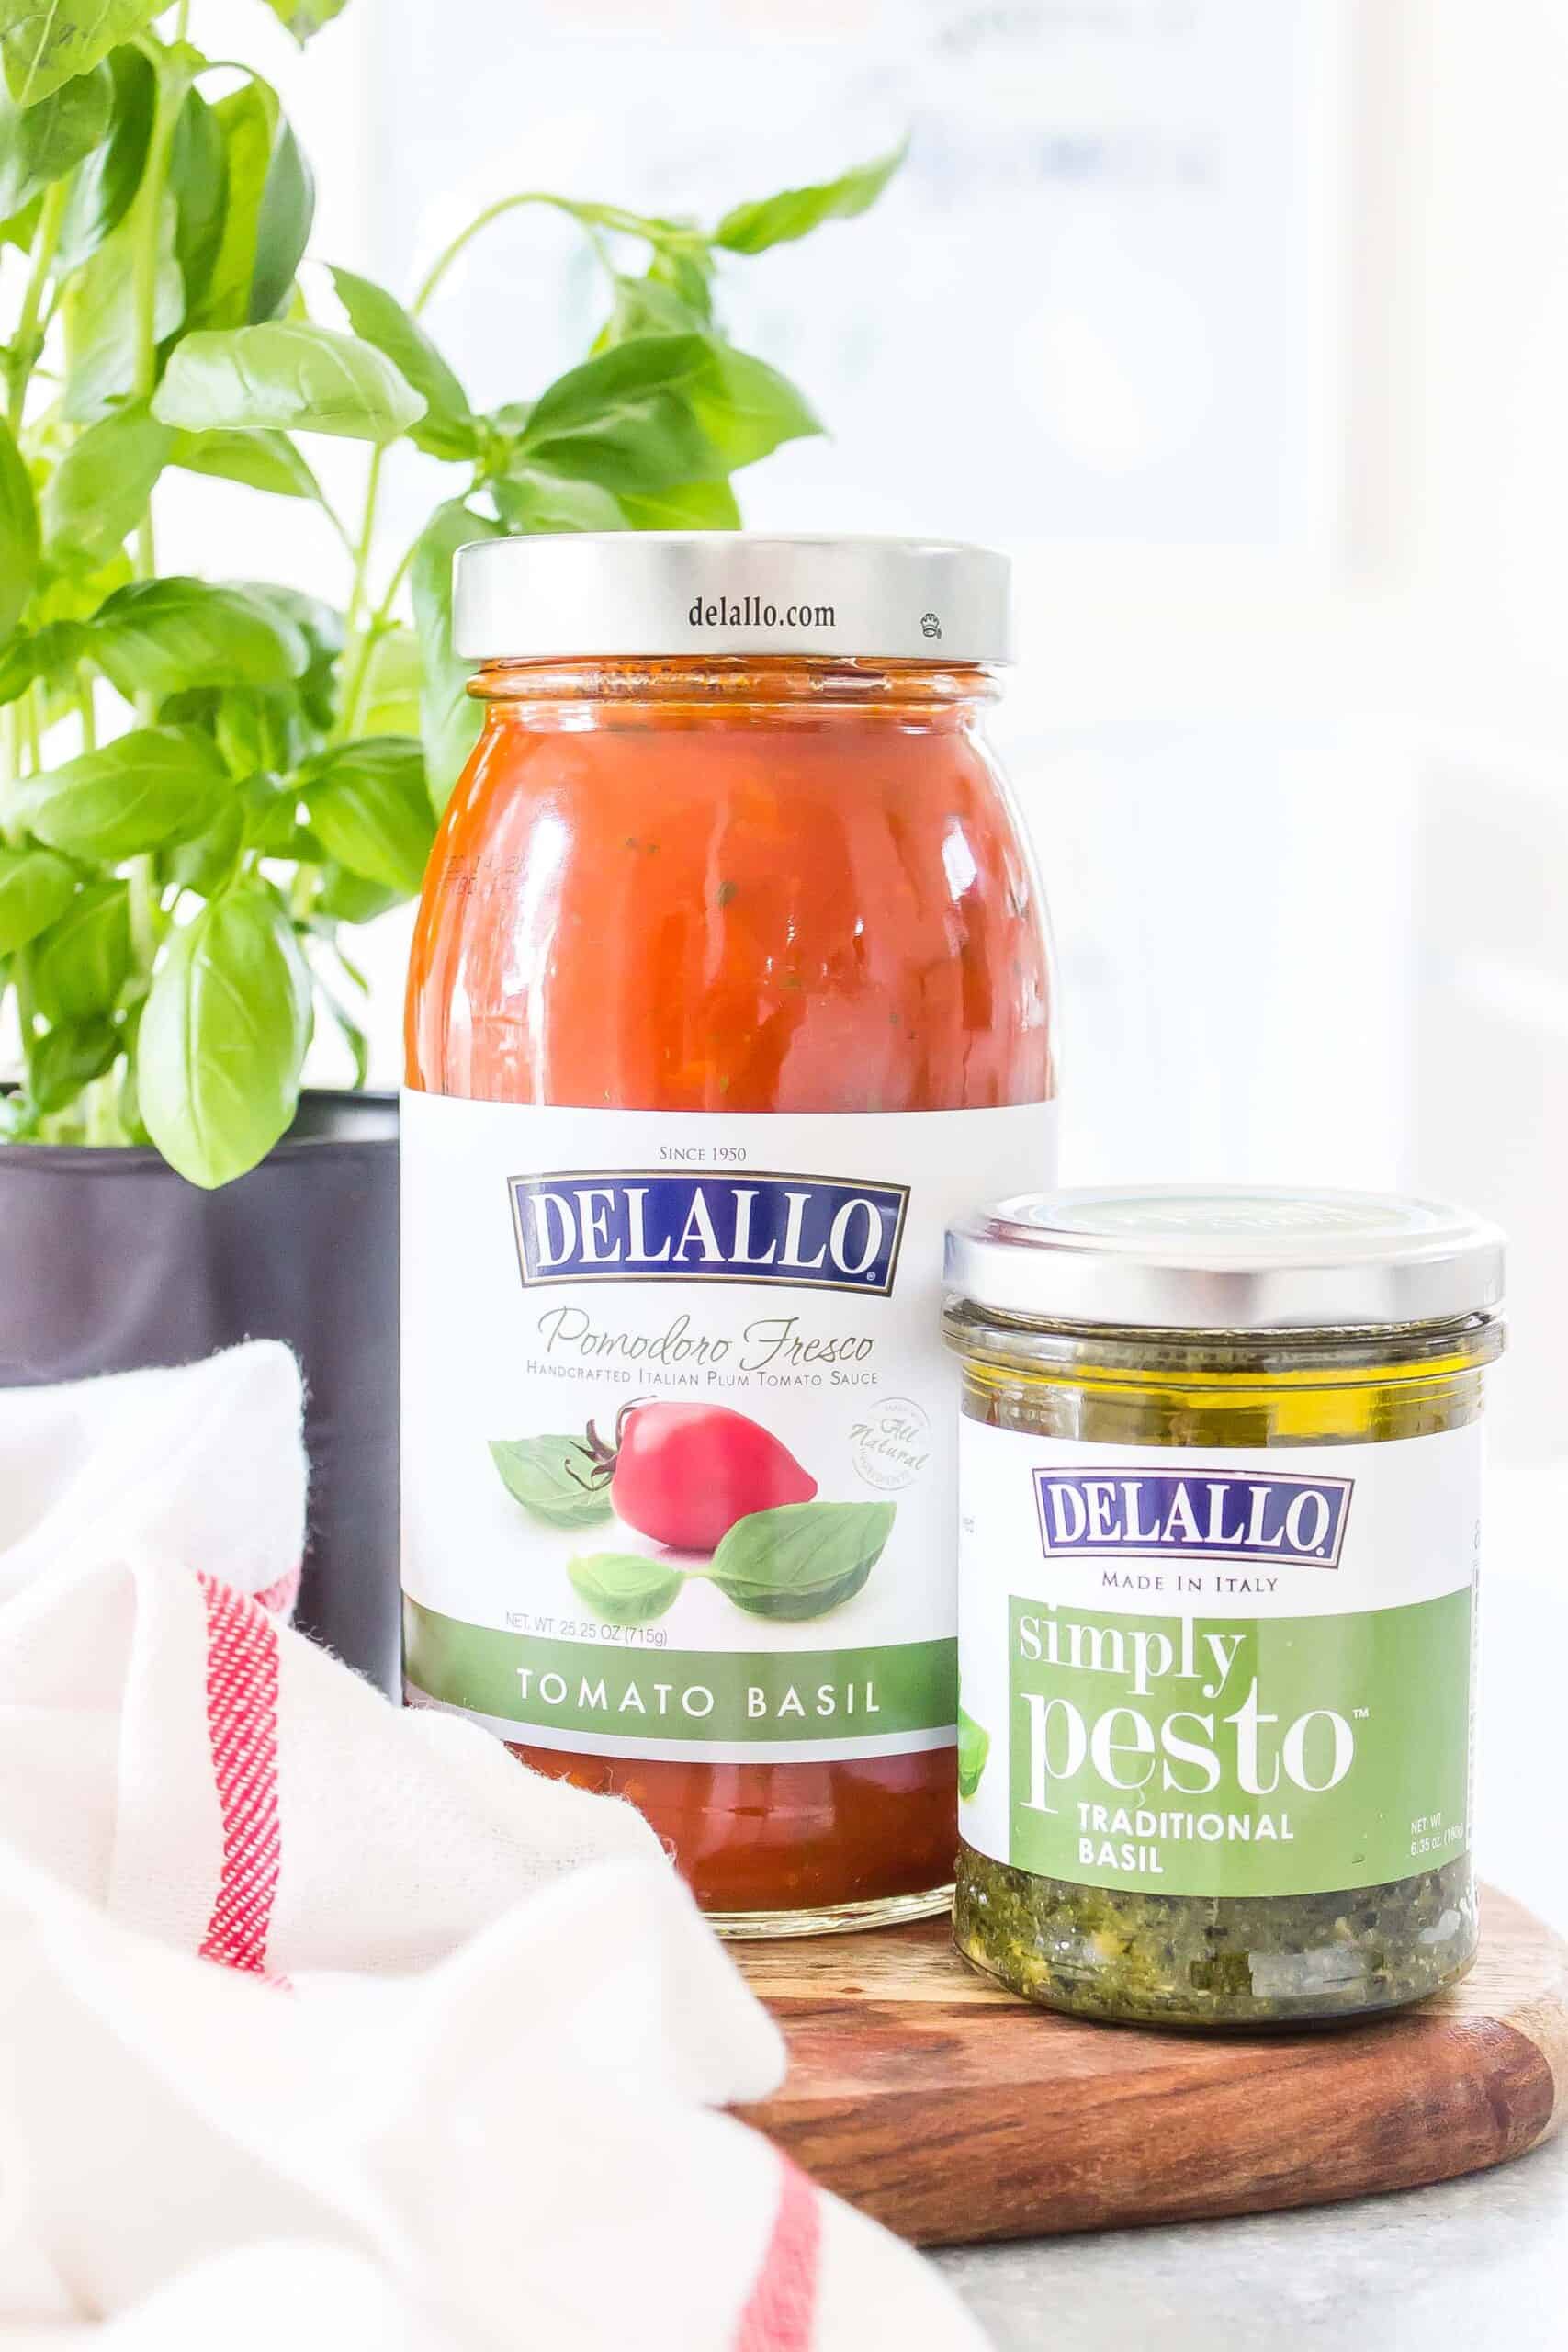 DeLallo Tomato Basil and Pesto Sauce Jars